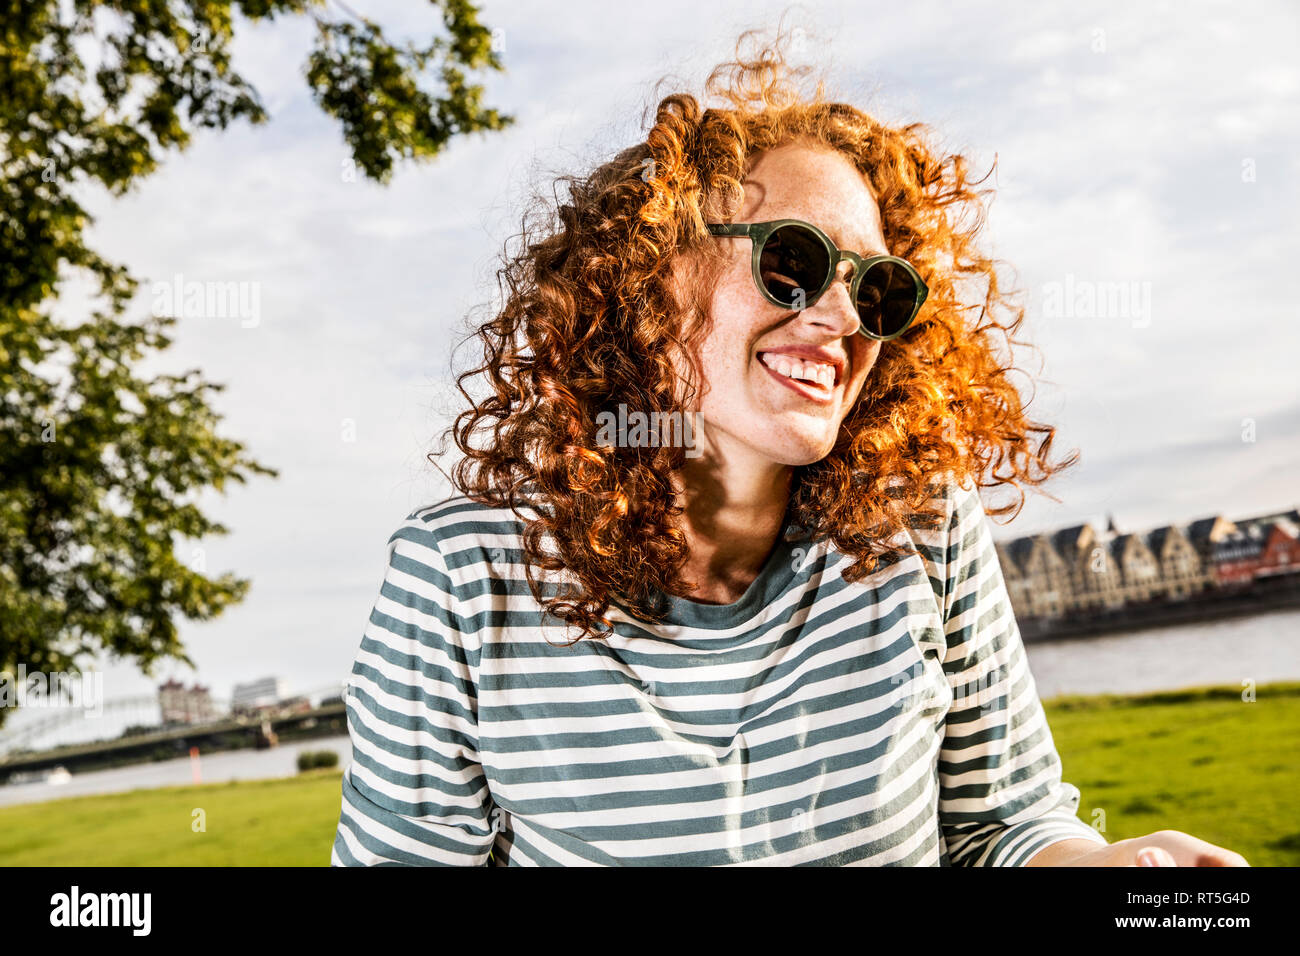 Allemagne, Cologne, portrait de jeune femme rousse riant wearing sunglasses Banque D'Images